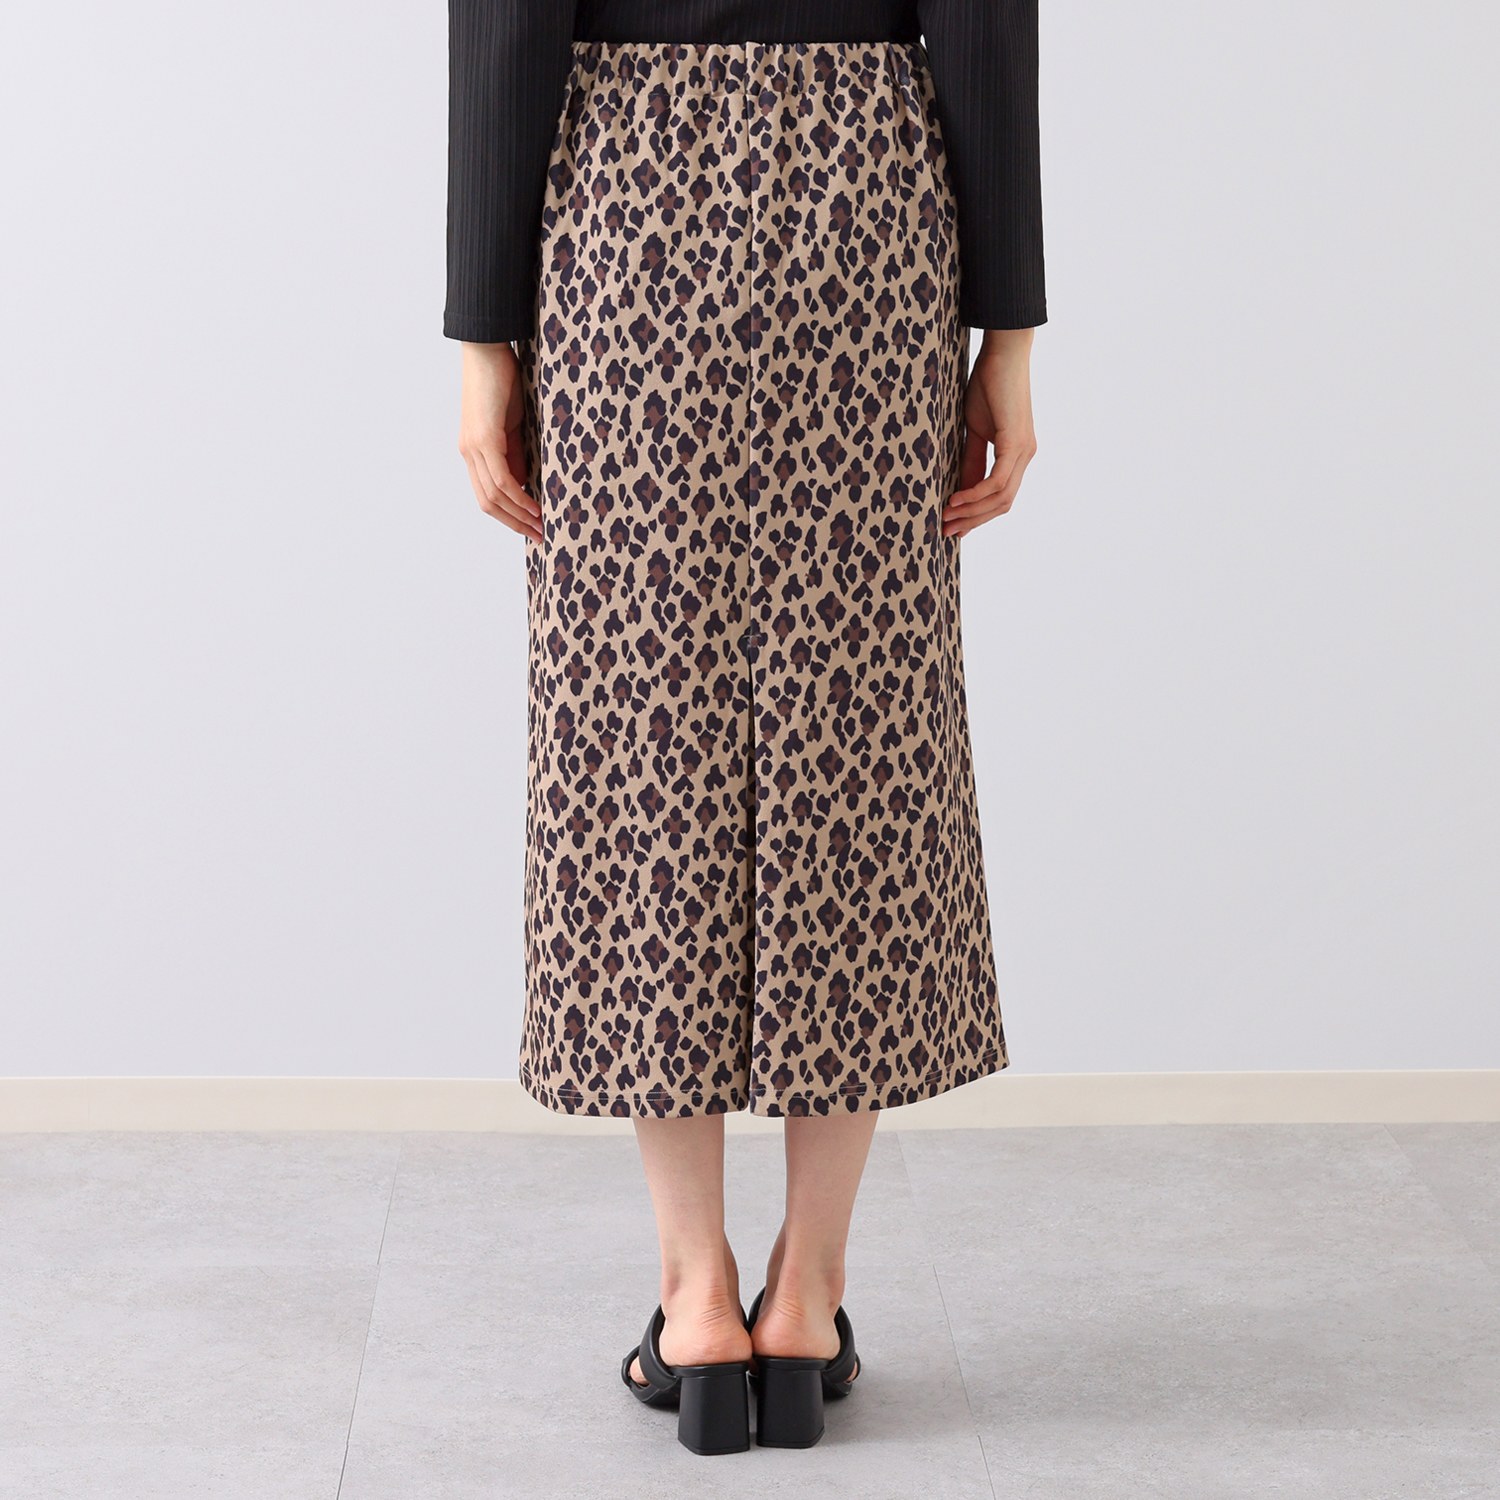 シルバーミントシュガー 布帛風カットソーの 見せかけタイトな のびのびロングスカート